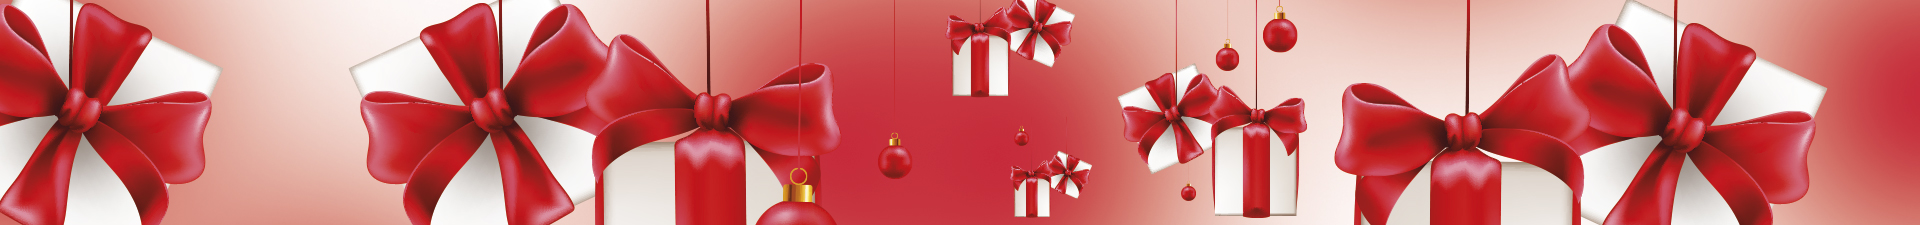 Weihnachten: Geschenkpapier, Umschläge und Schleifen